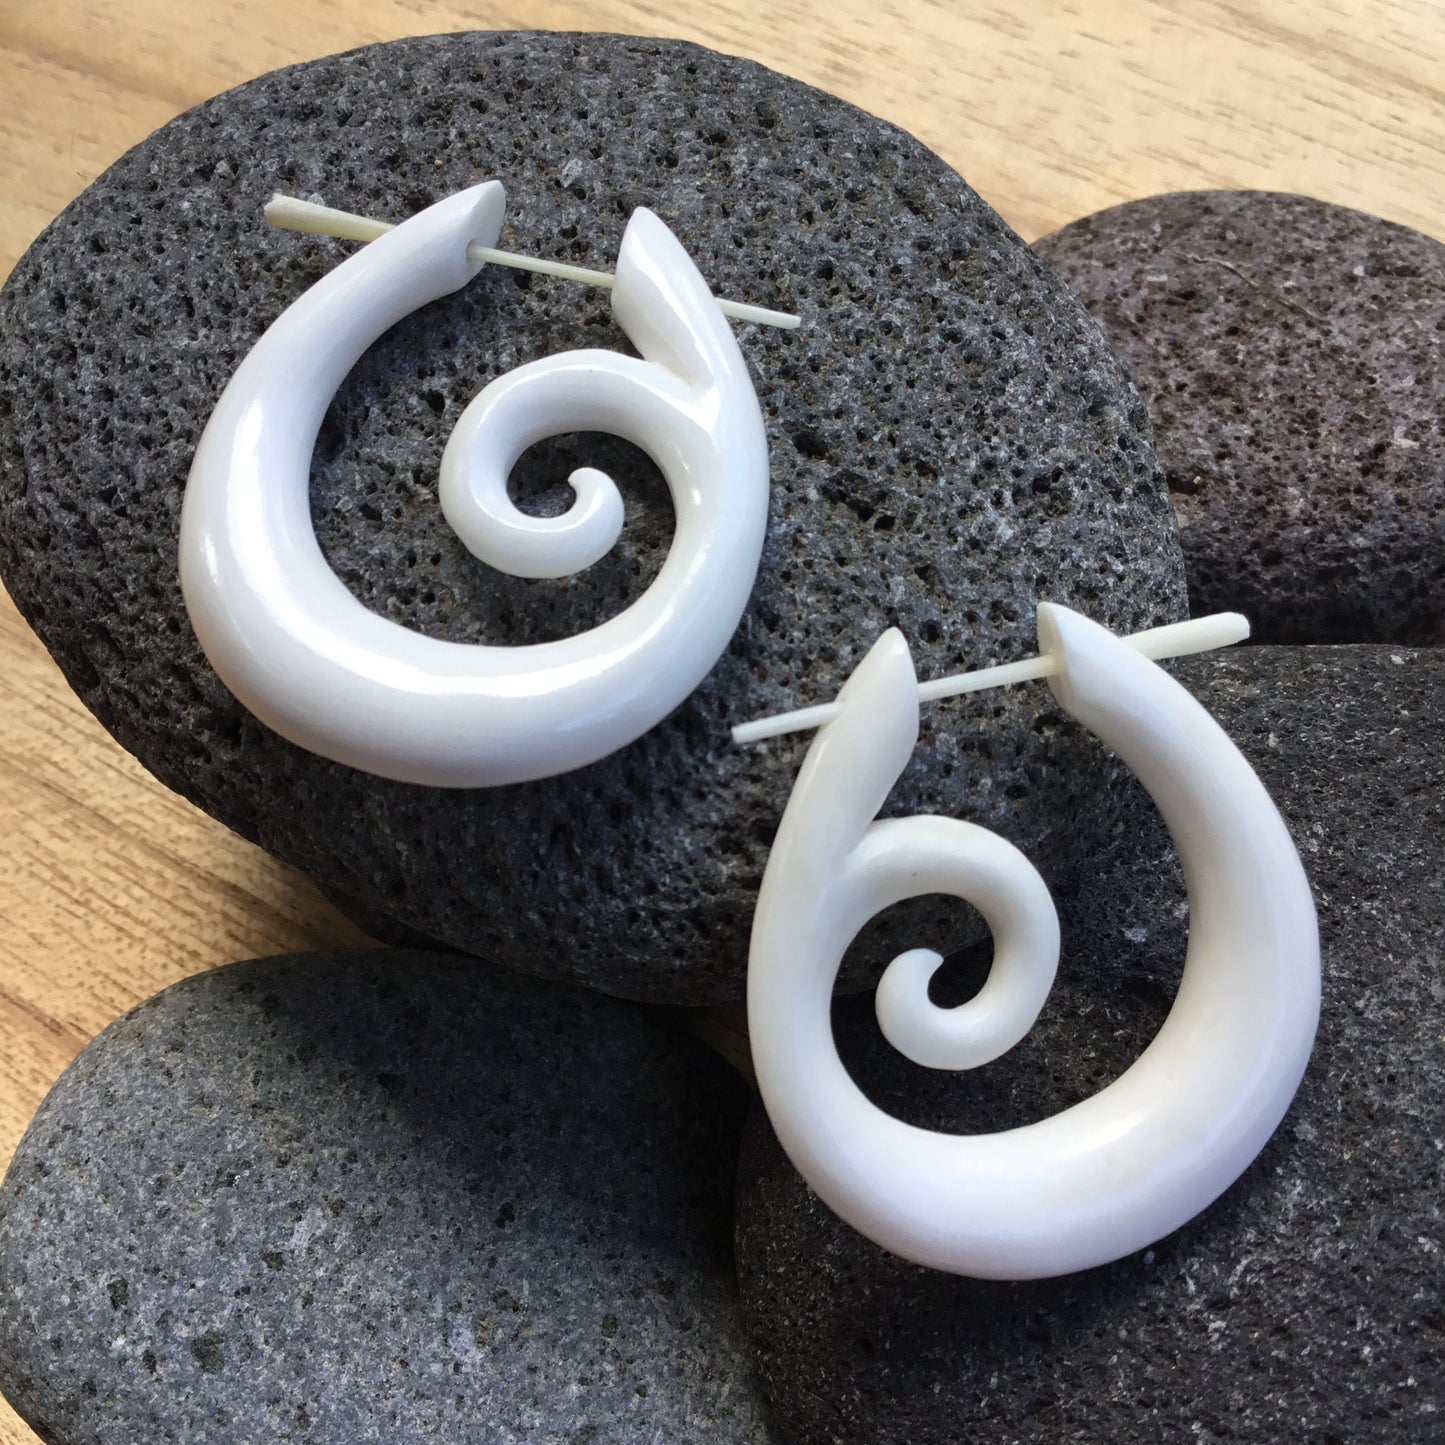 White spiral earrings